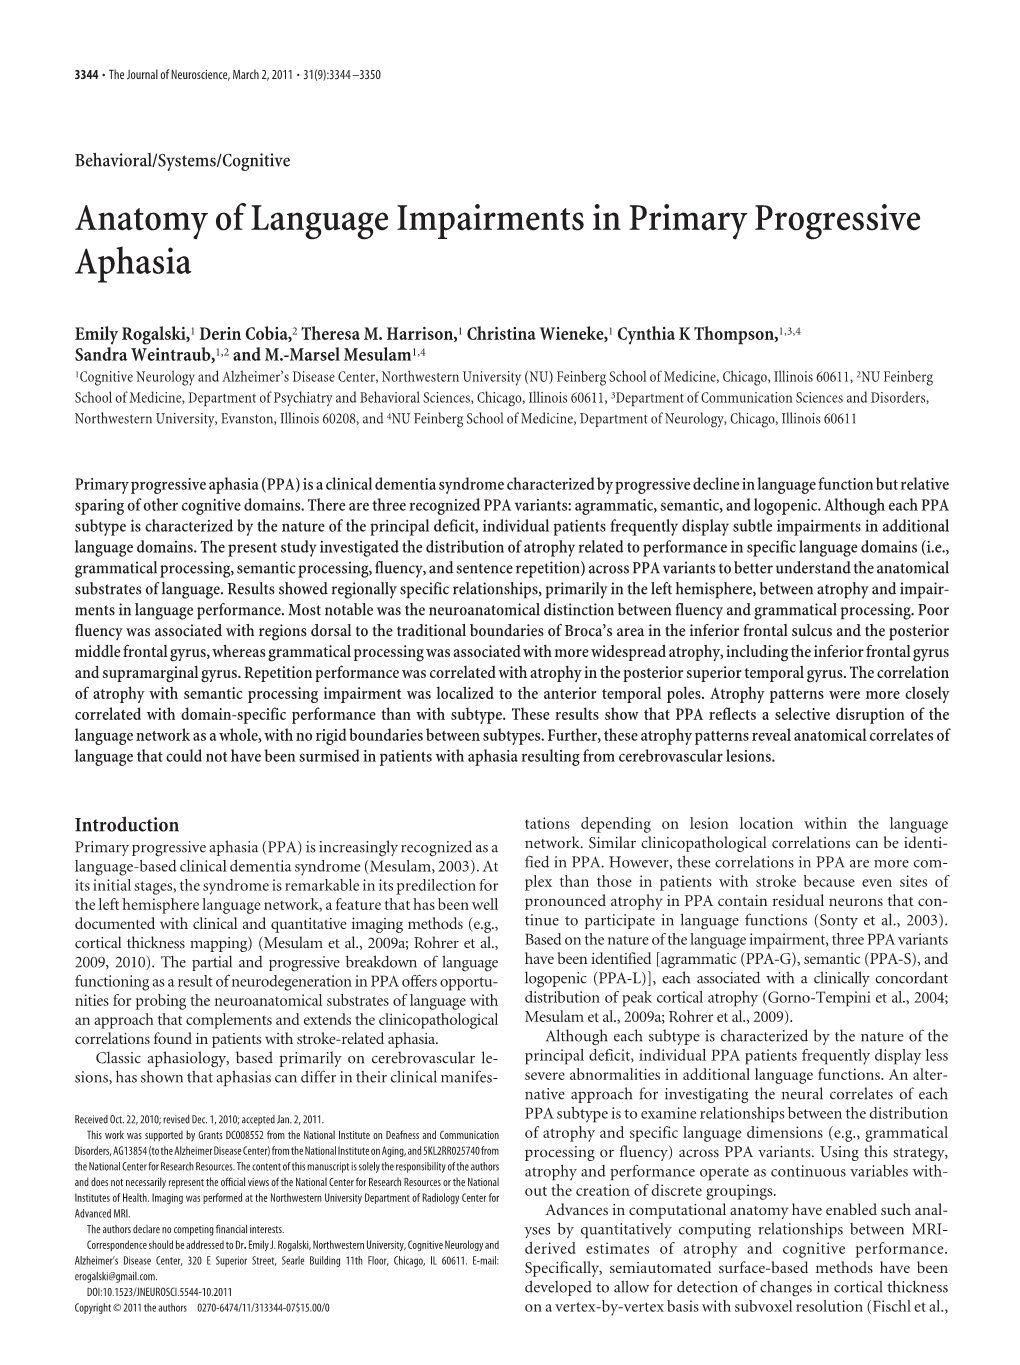 Anatomy of Language Impairments in Primary Progressive Aphasia